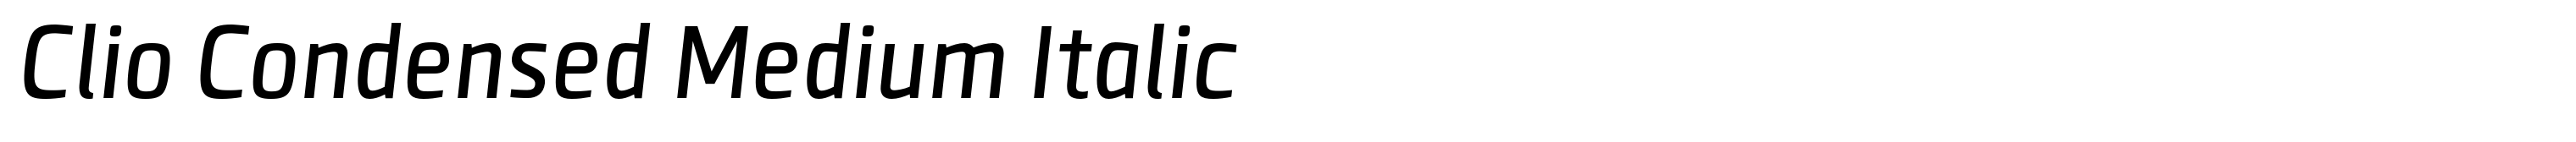 Clio Condensed Medium Italic